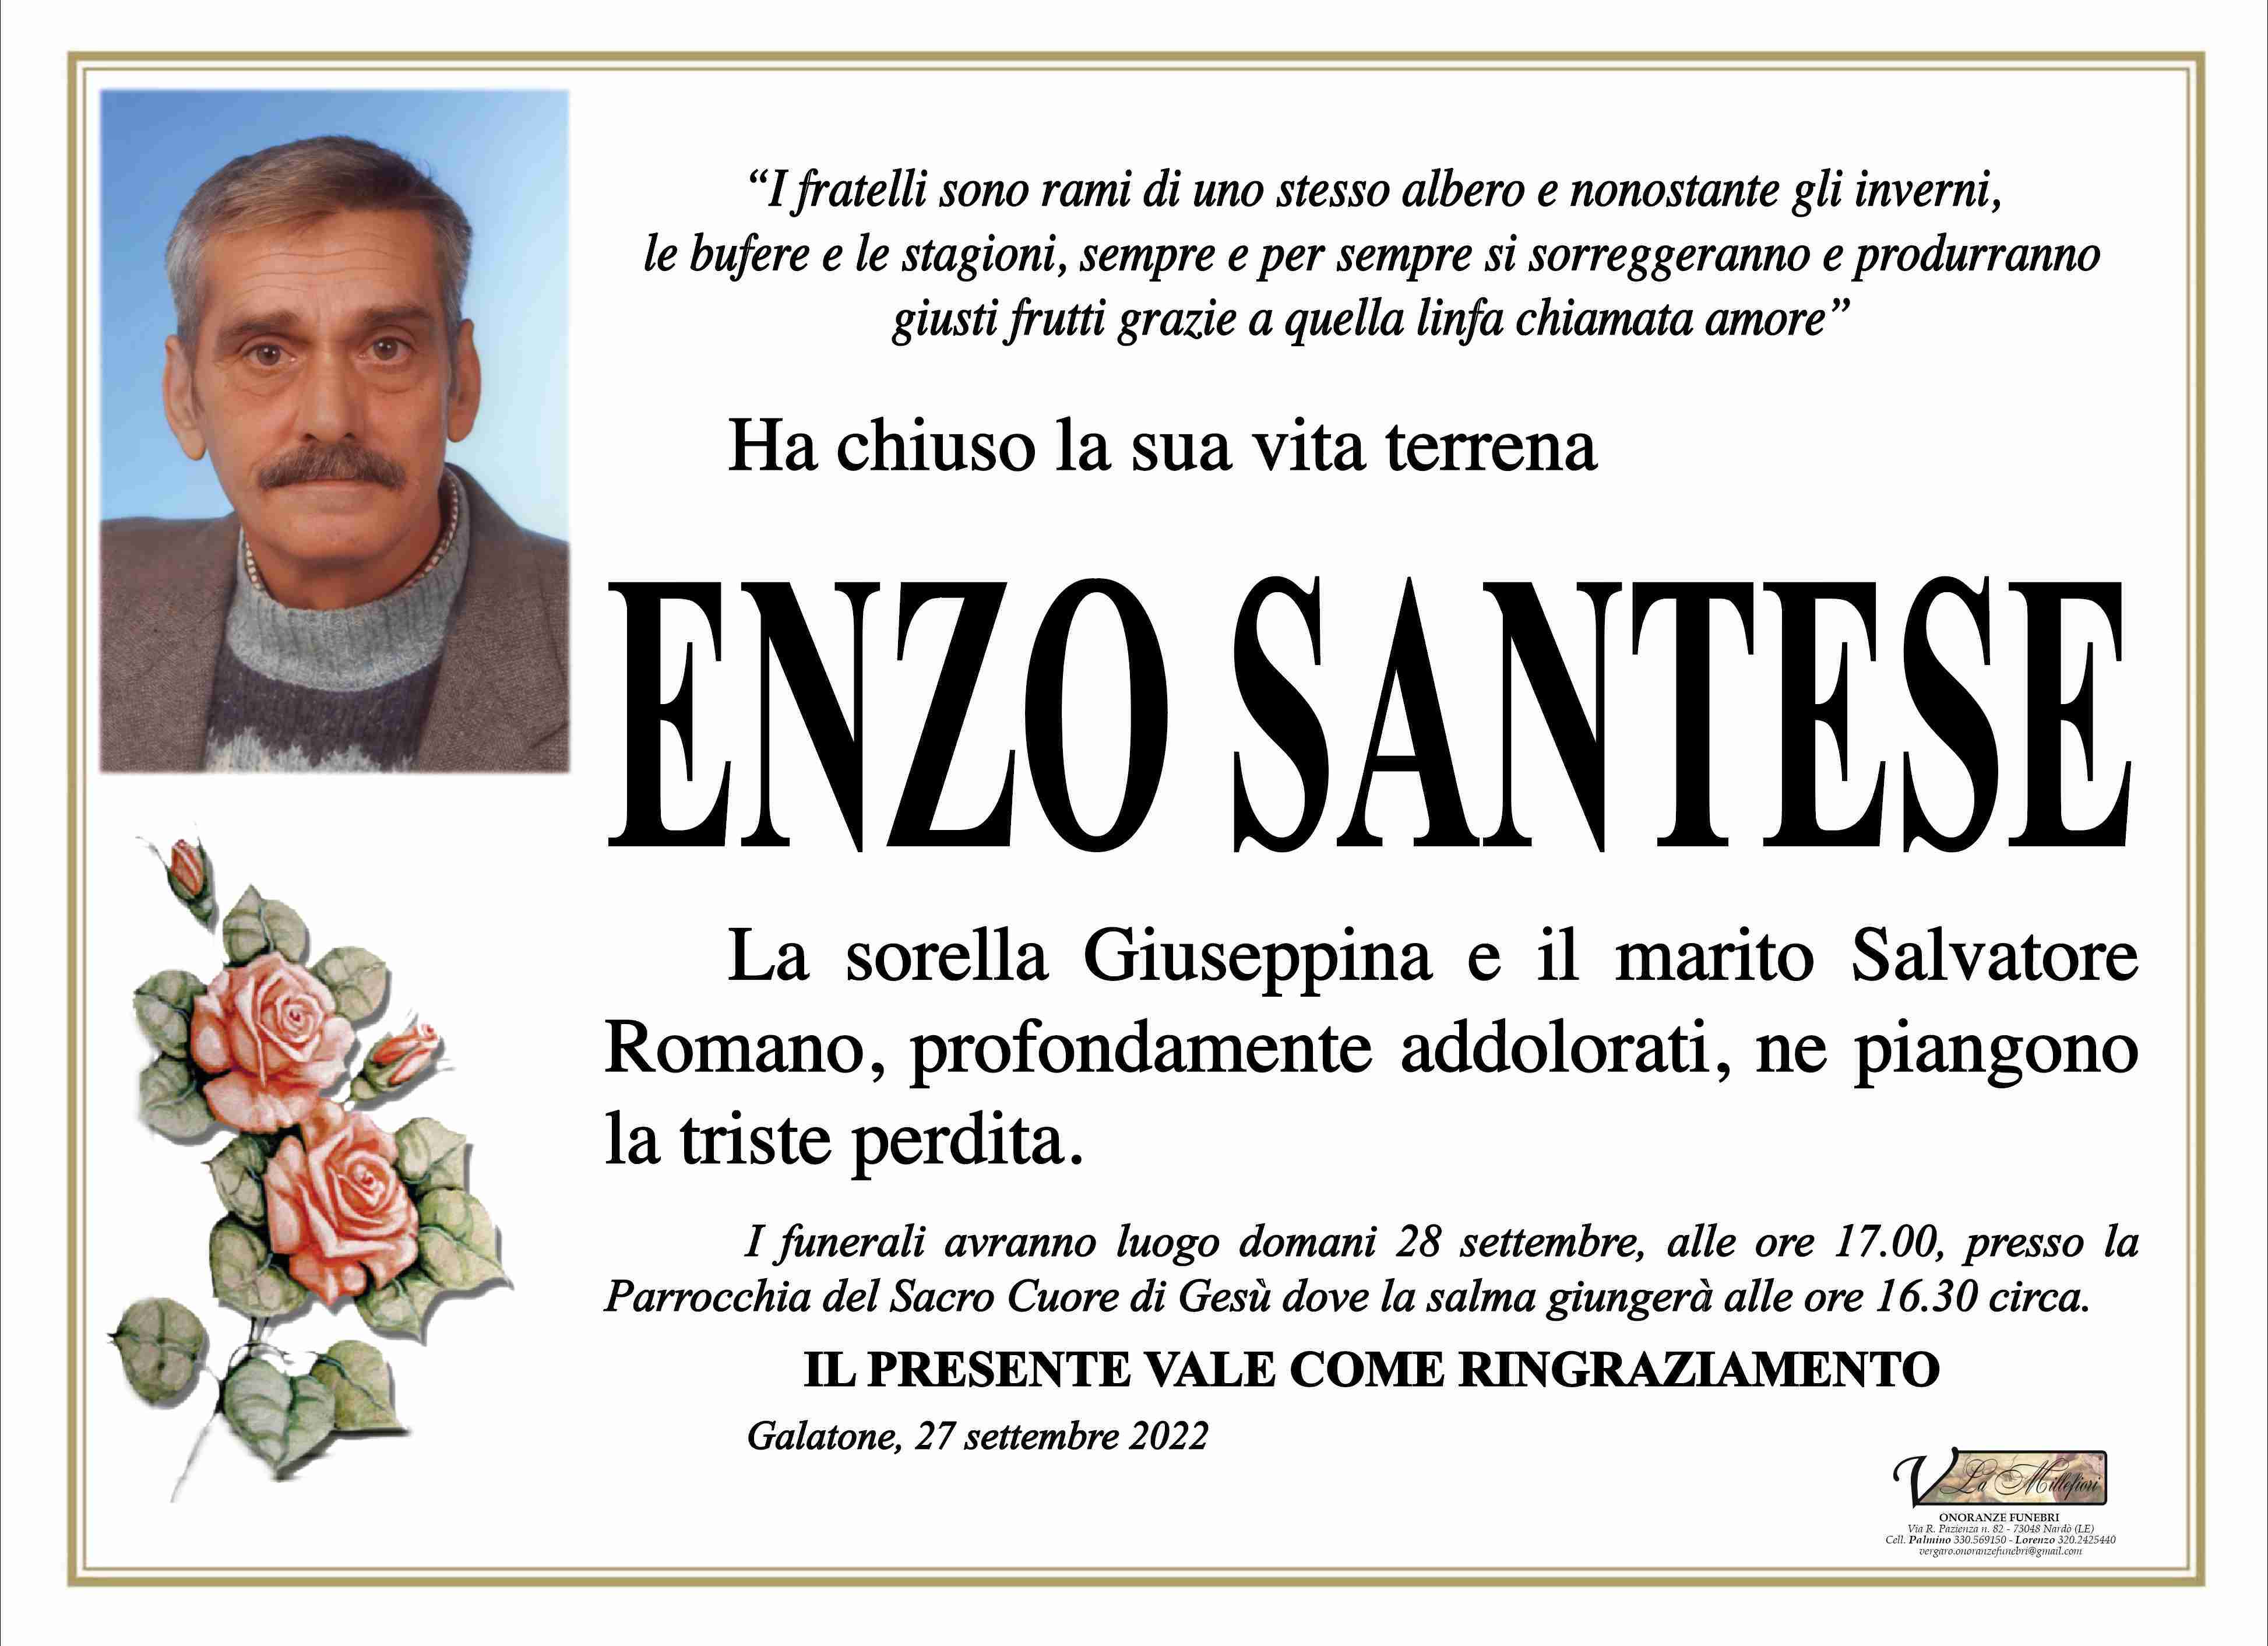 Enzo Santese